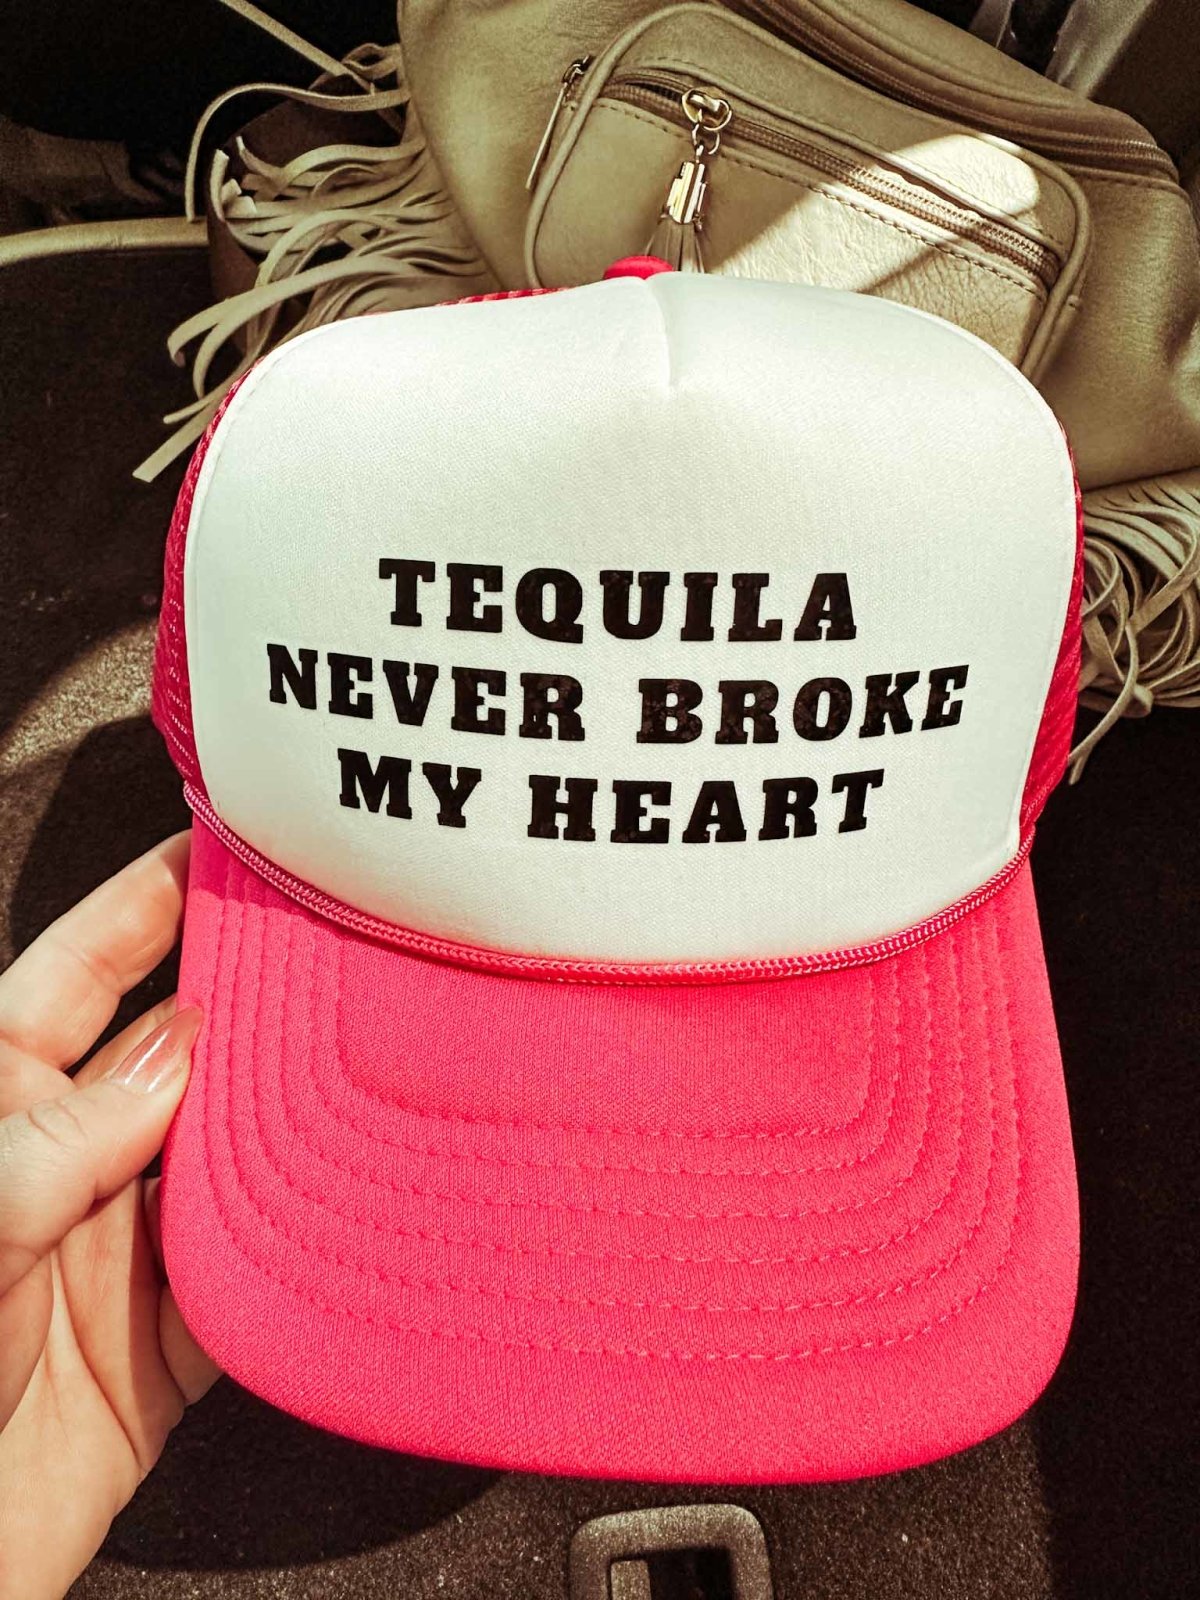 Tequila Never Broke My Heart Hat - trucker hat